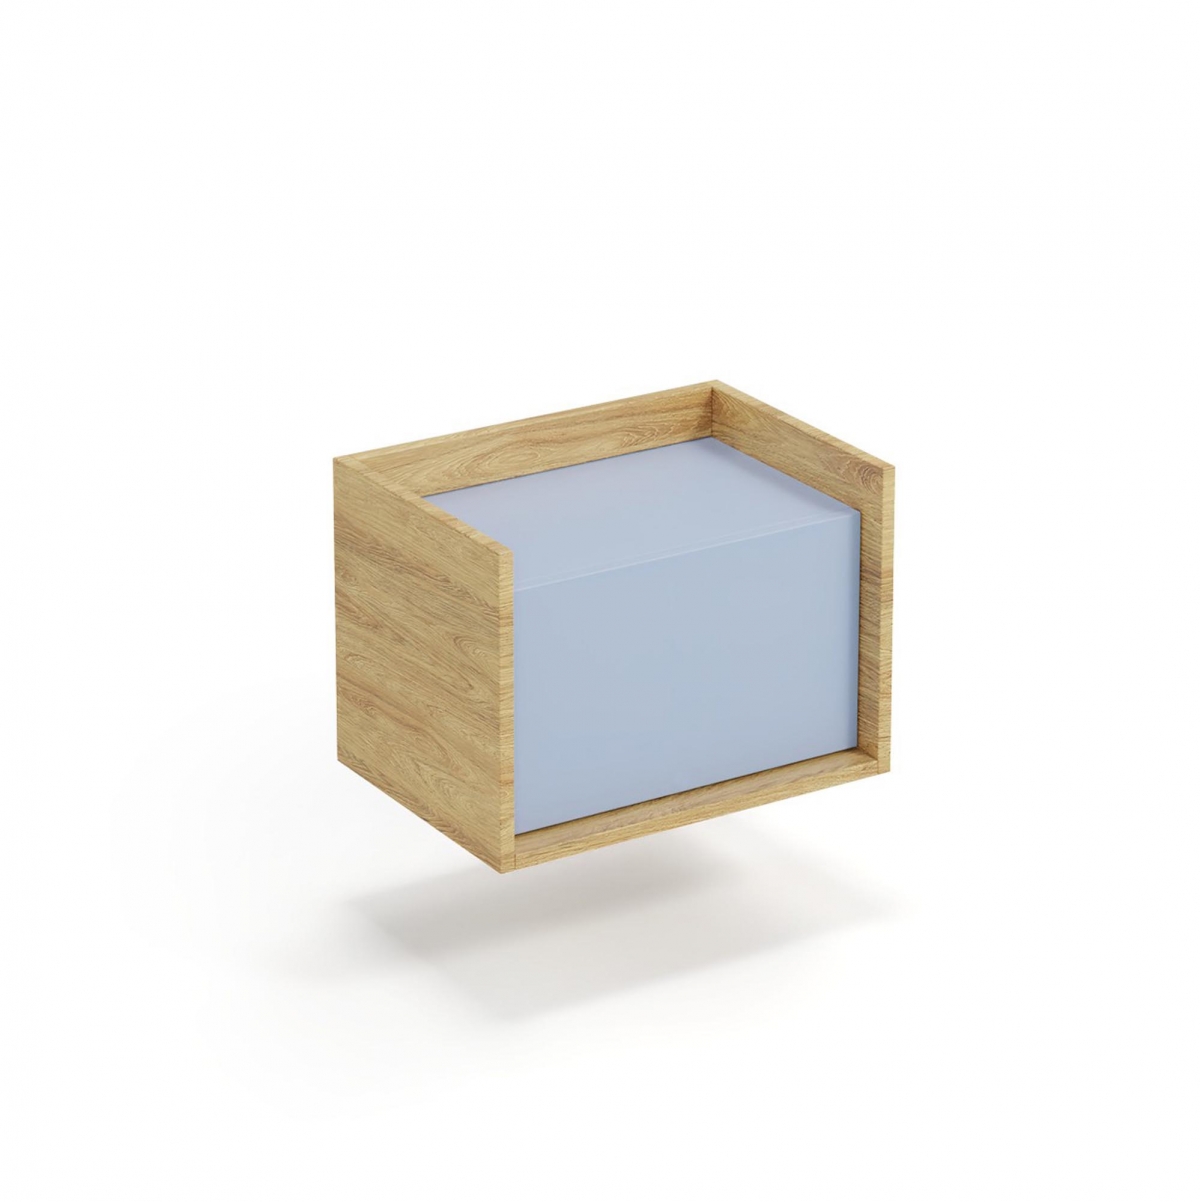 MOBIUS 1D alacsony szekrény - próbák/tesztek???: natúr hickory, frontrészek - horizon kék mobius skříňka nízká 1D korpus: hikora přírodní, přední části - modrý obzor